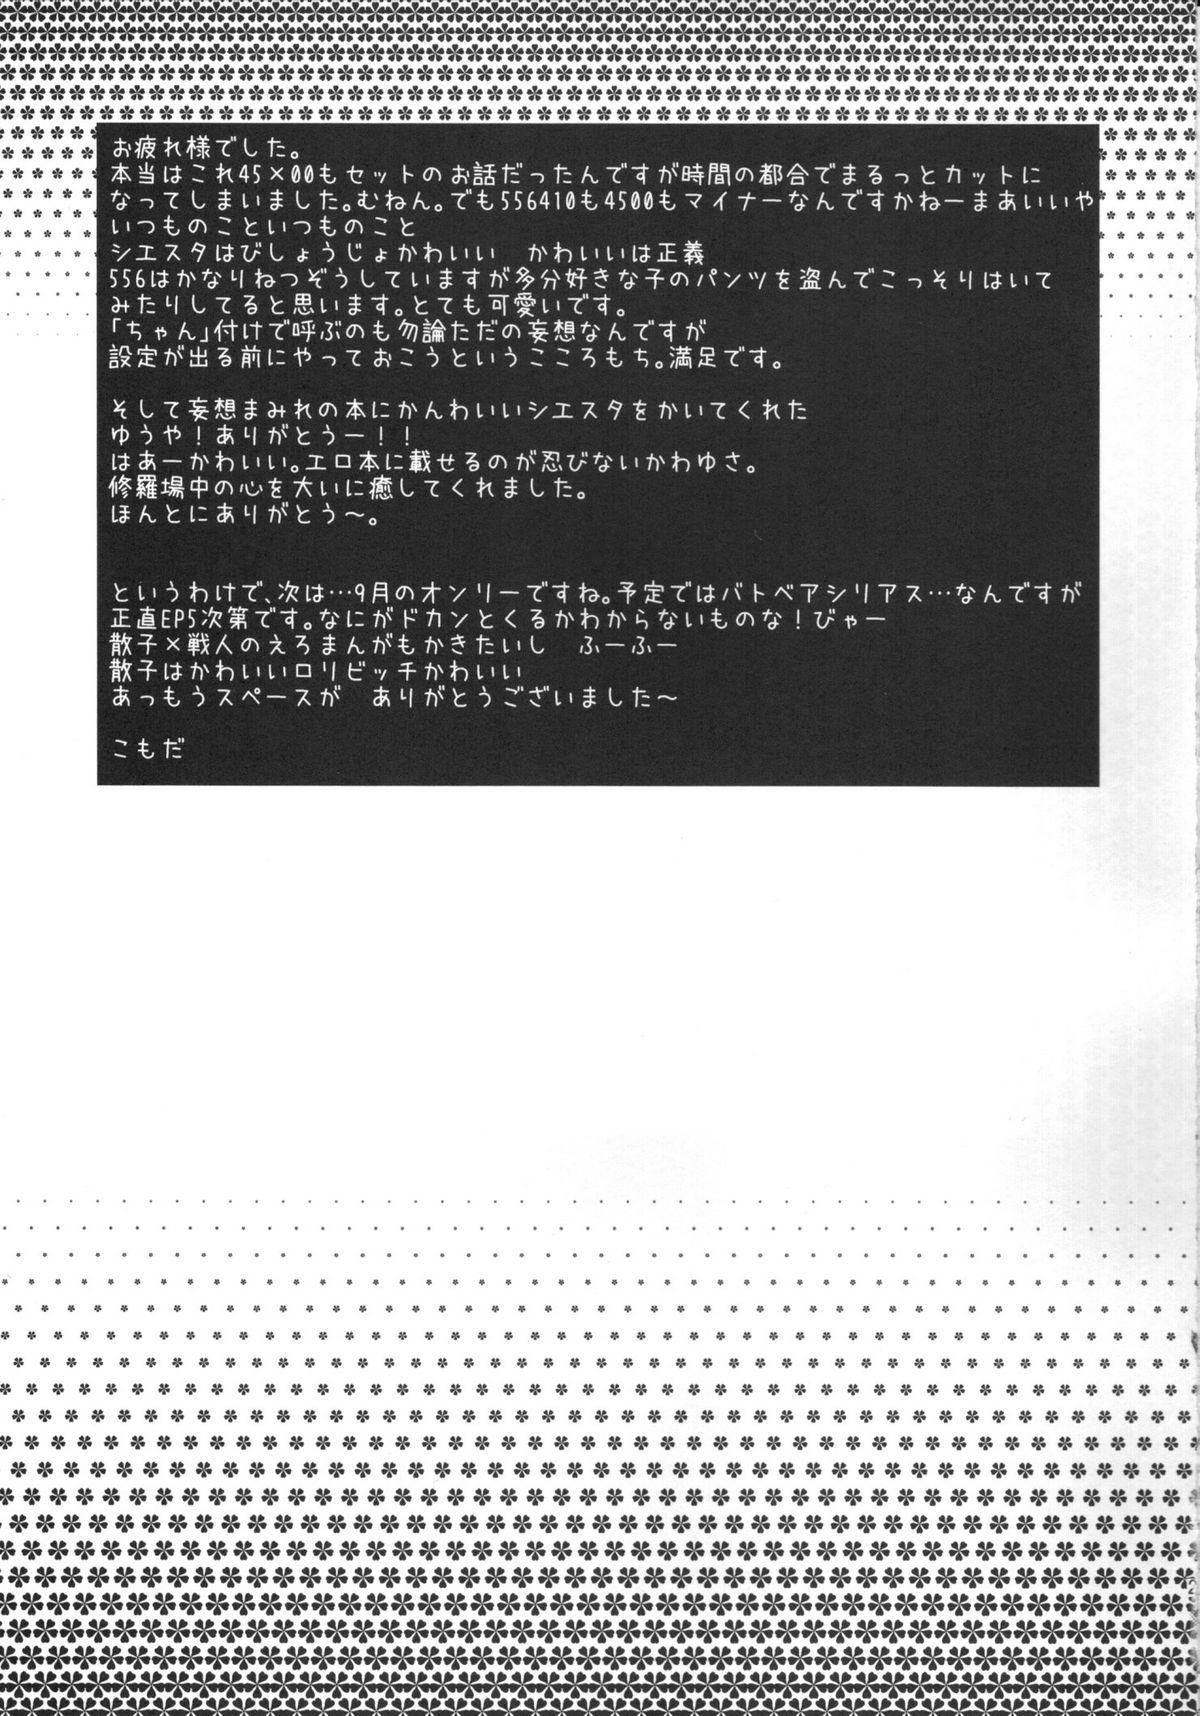 Piroca RabiRabi - Umineko no naku koro ni Roughsex - Page 18